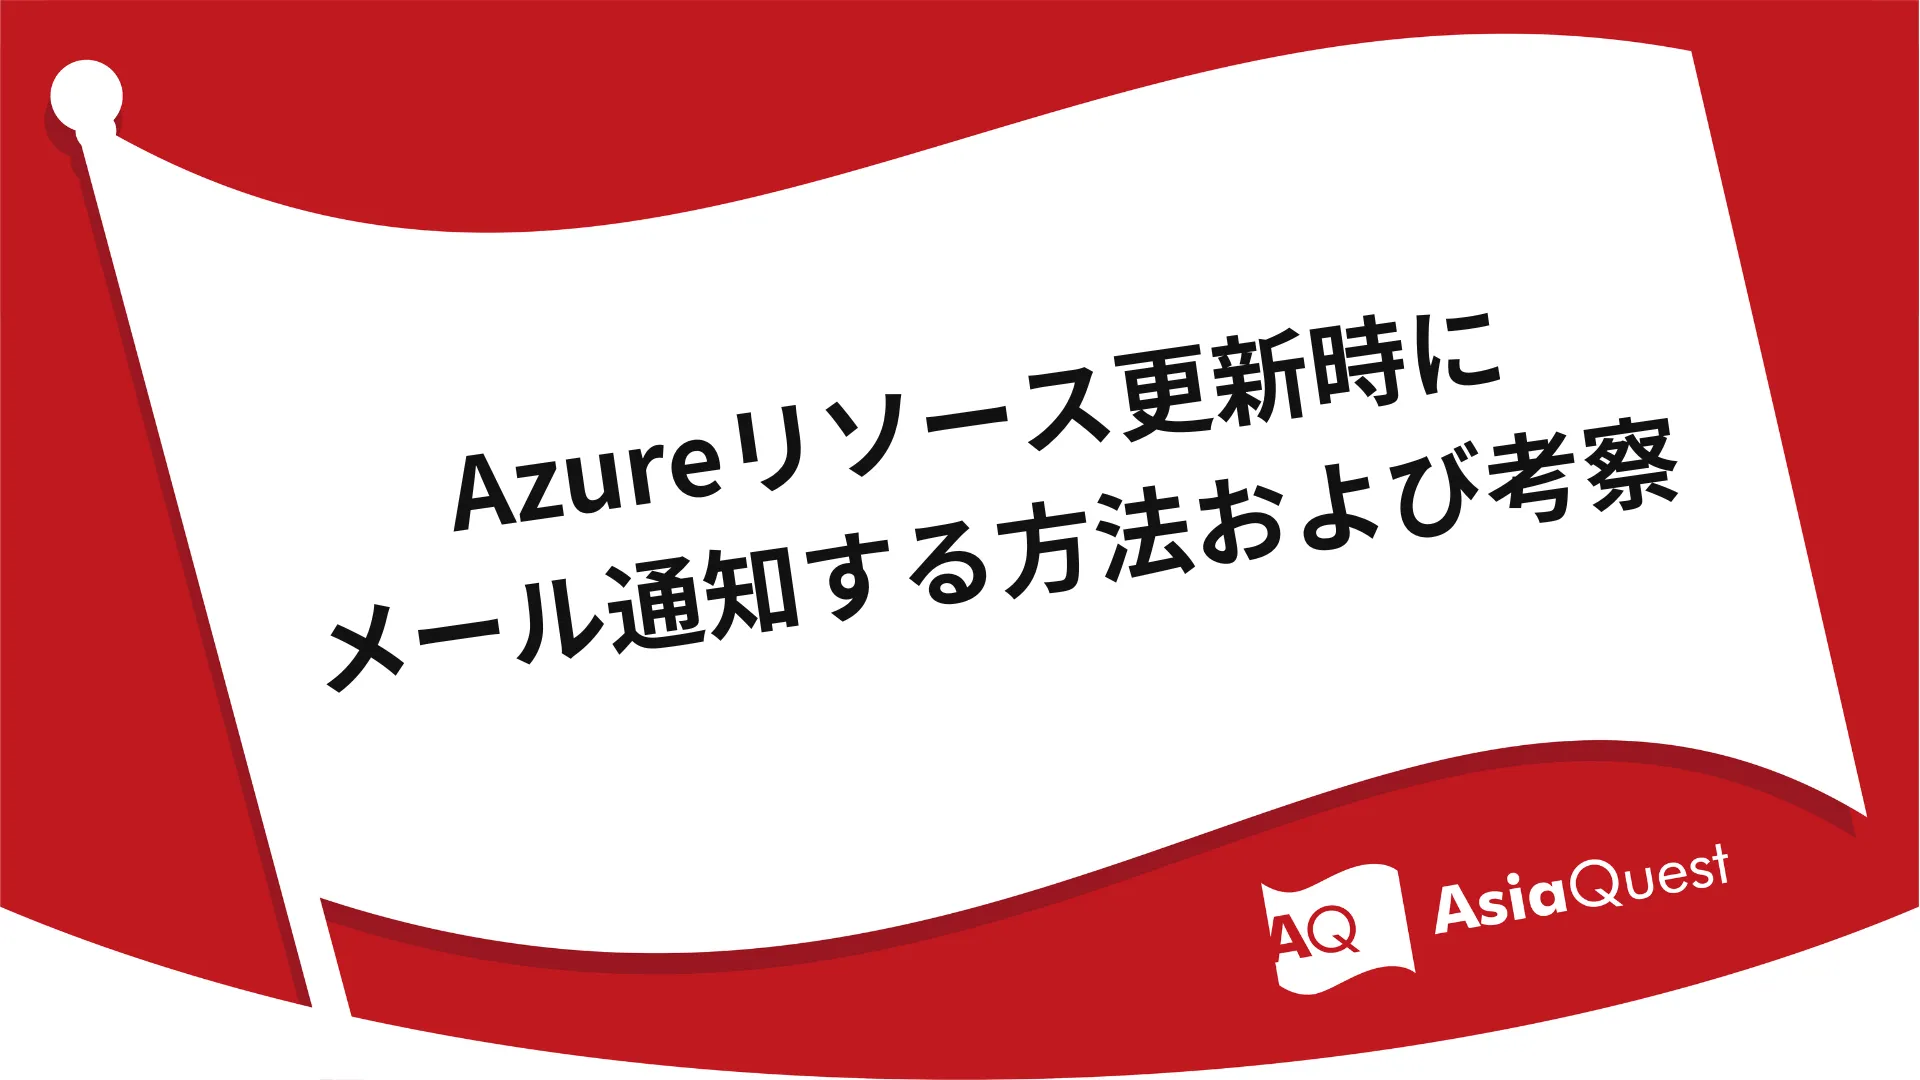 Azureリソース更新時にメール通知する方法および考察